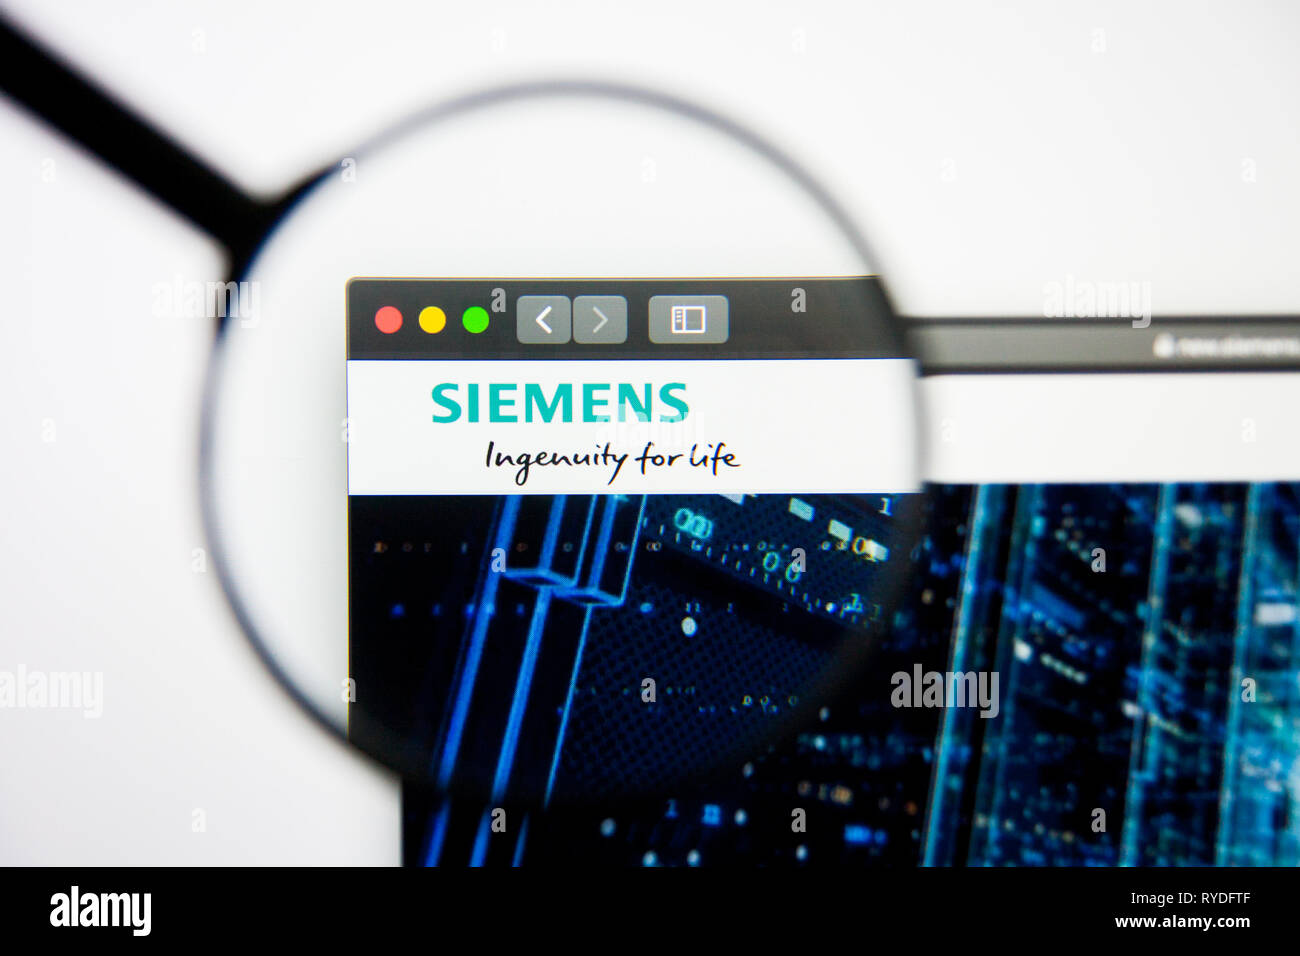 Los Angeles, California, Stati Uniti d'America - 5 Marzo 2019: Siemens website homepage. Siemens logo visibile sulla schermata di visualizzazione illustrativa editoriale Foto Stock